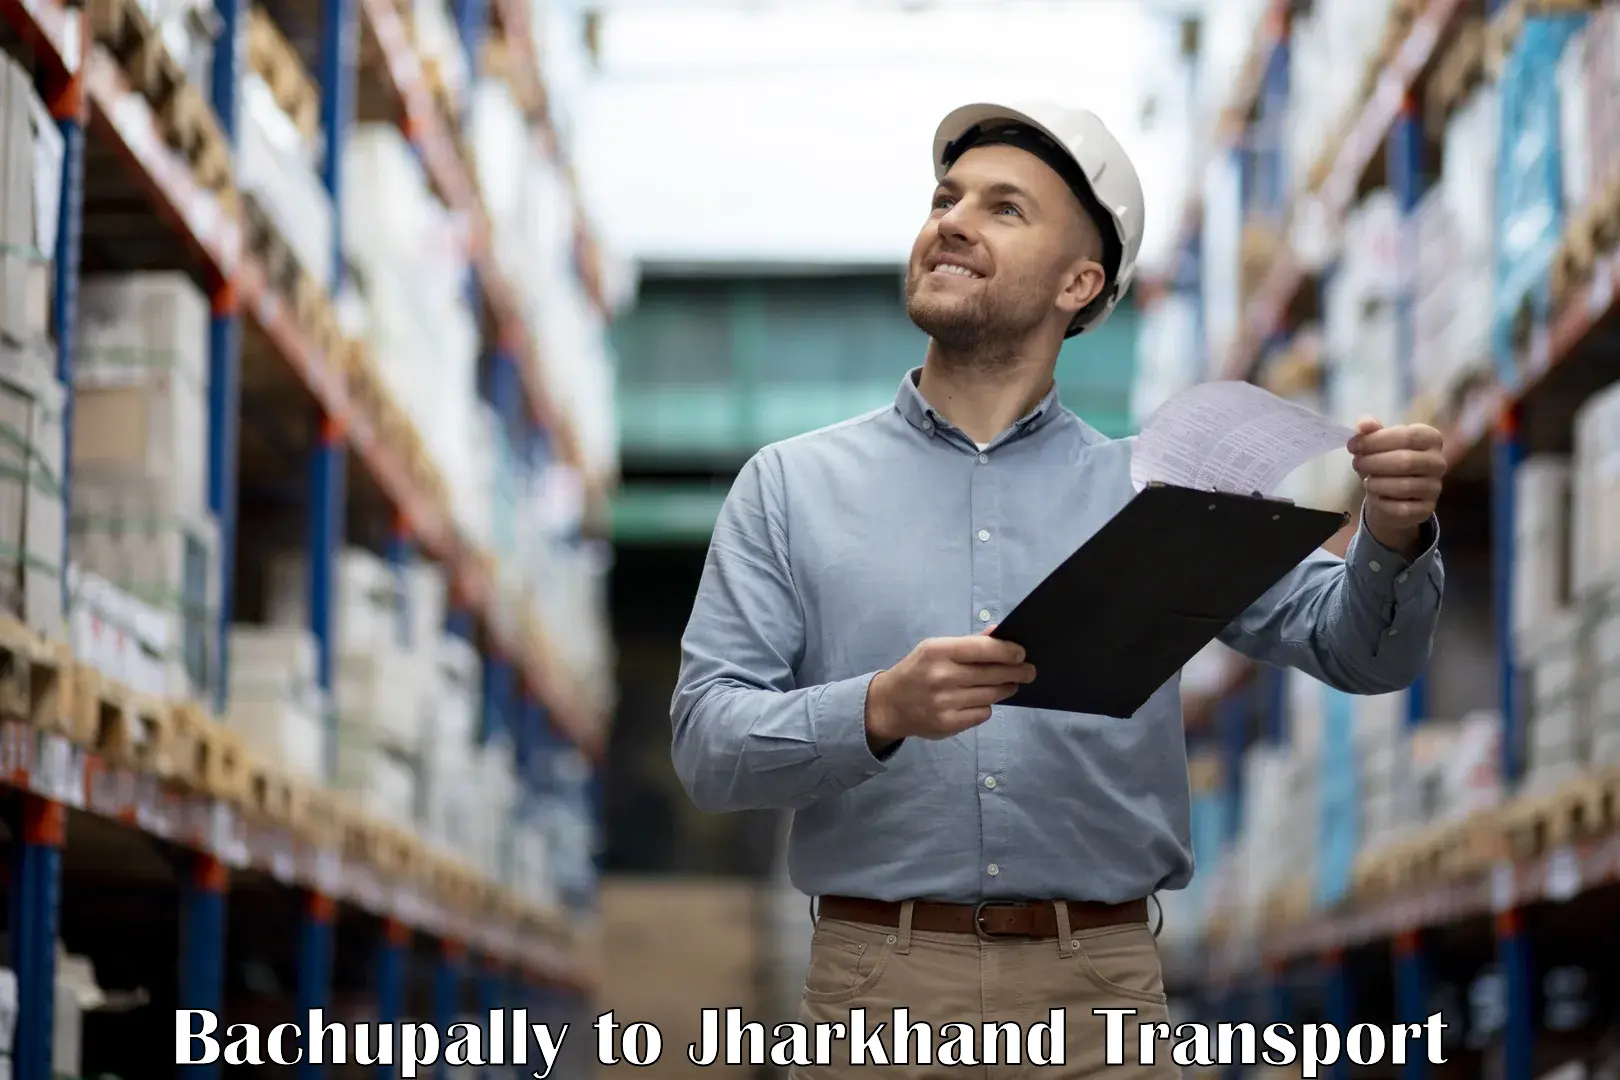 Transport in sharing Bachupally to Medininagar